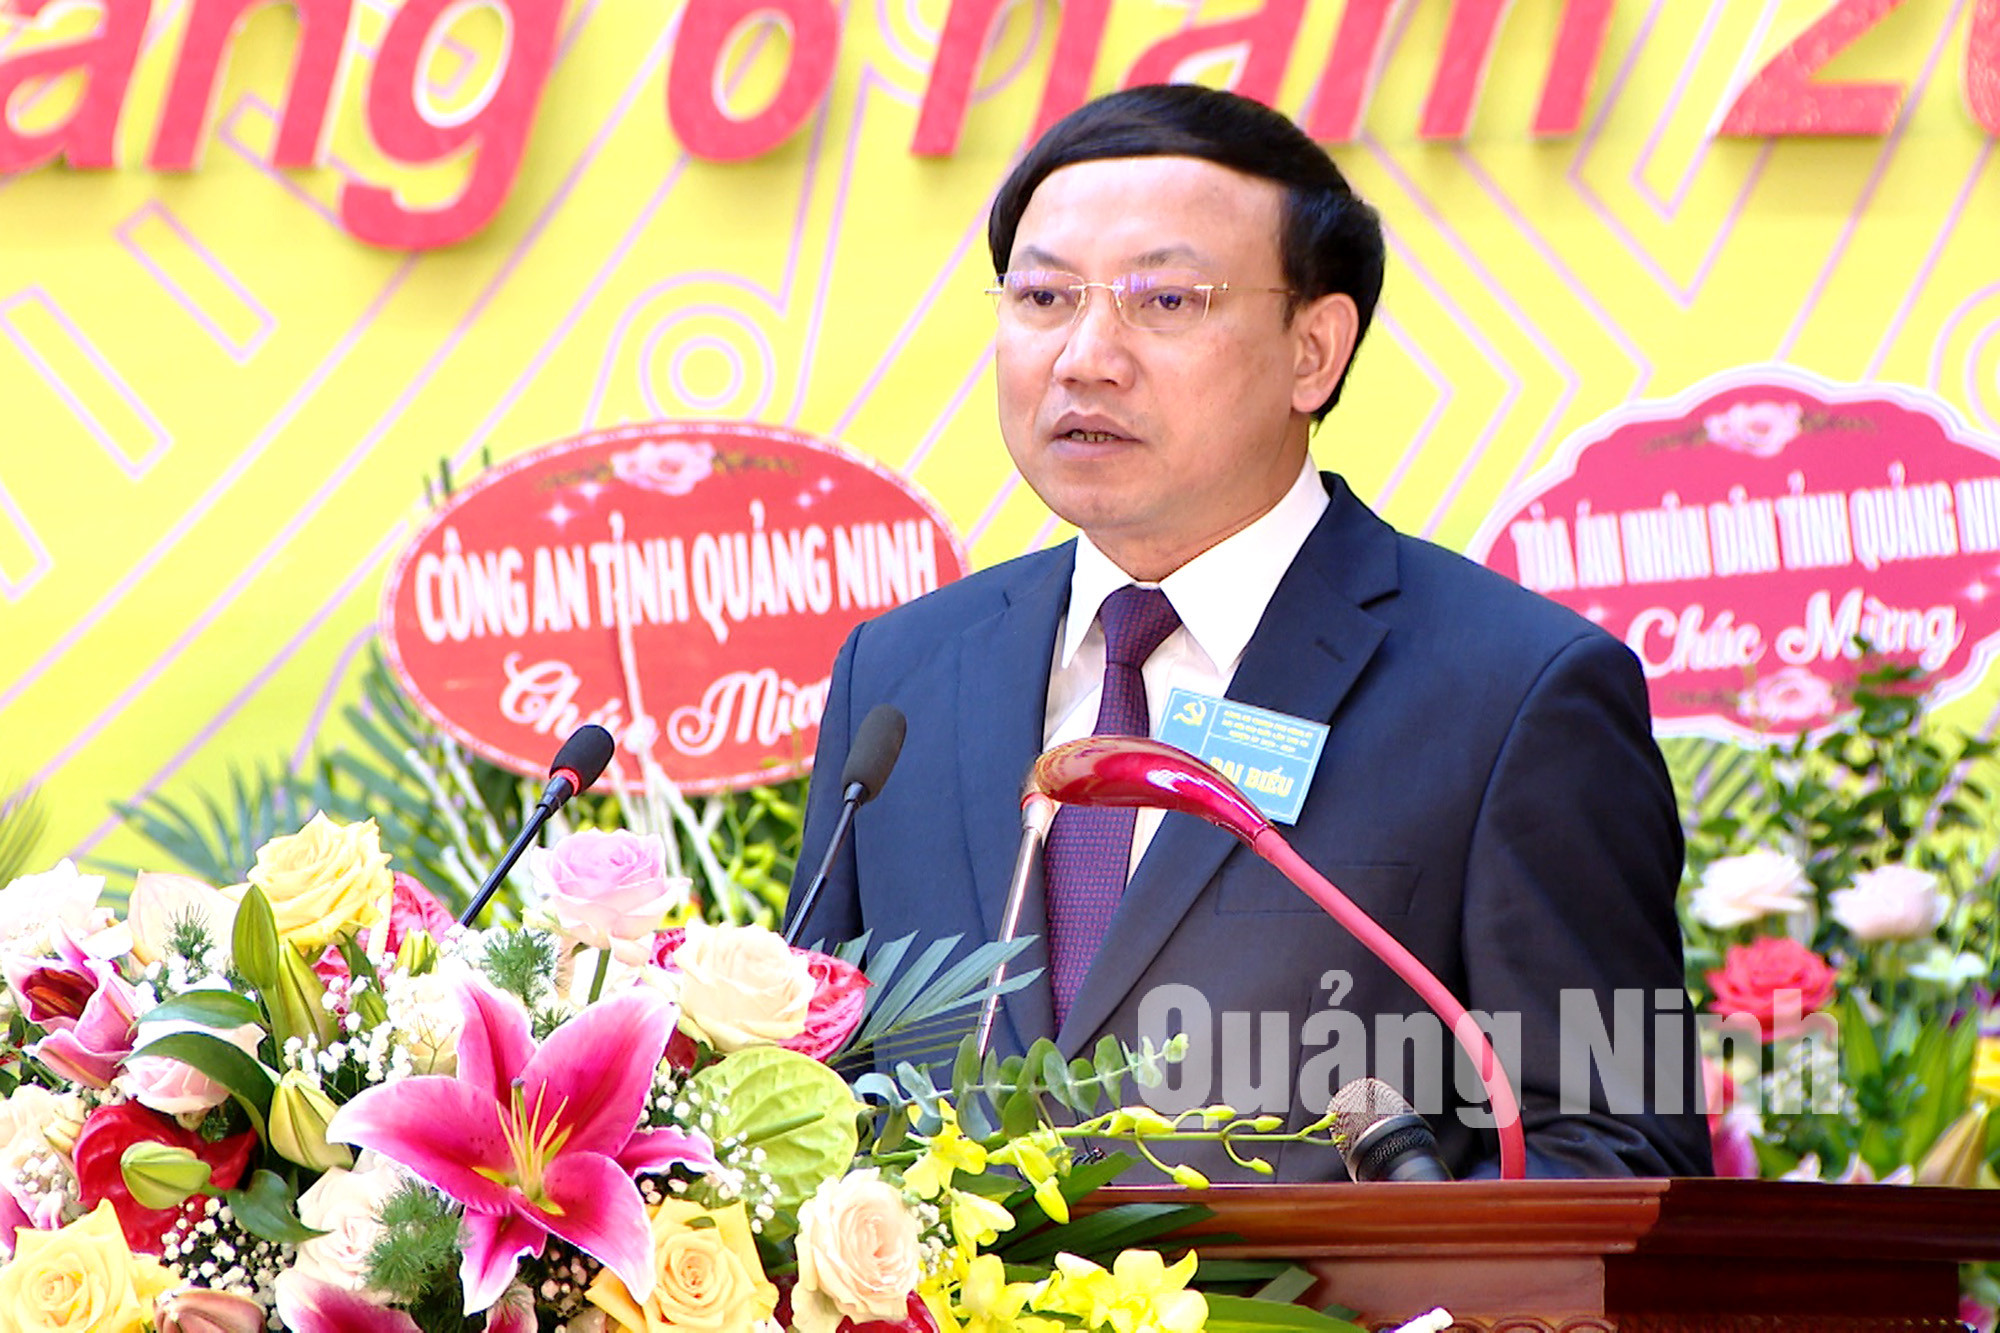 Đồng chí Nguyễn Xuân Ký, Bí thư Tỉnh ủy, Chủ tịch HĐND tỉnh, phát biểu chỉ đạo tại đại hội (6-2020). Ảnh: Thu Chung